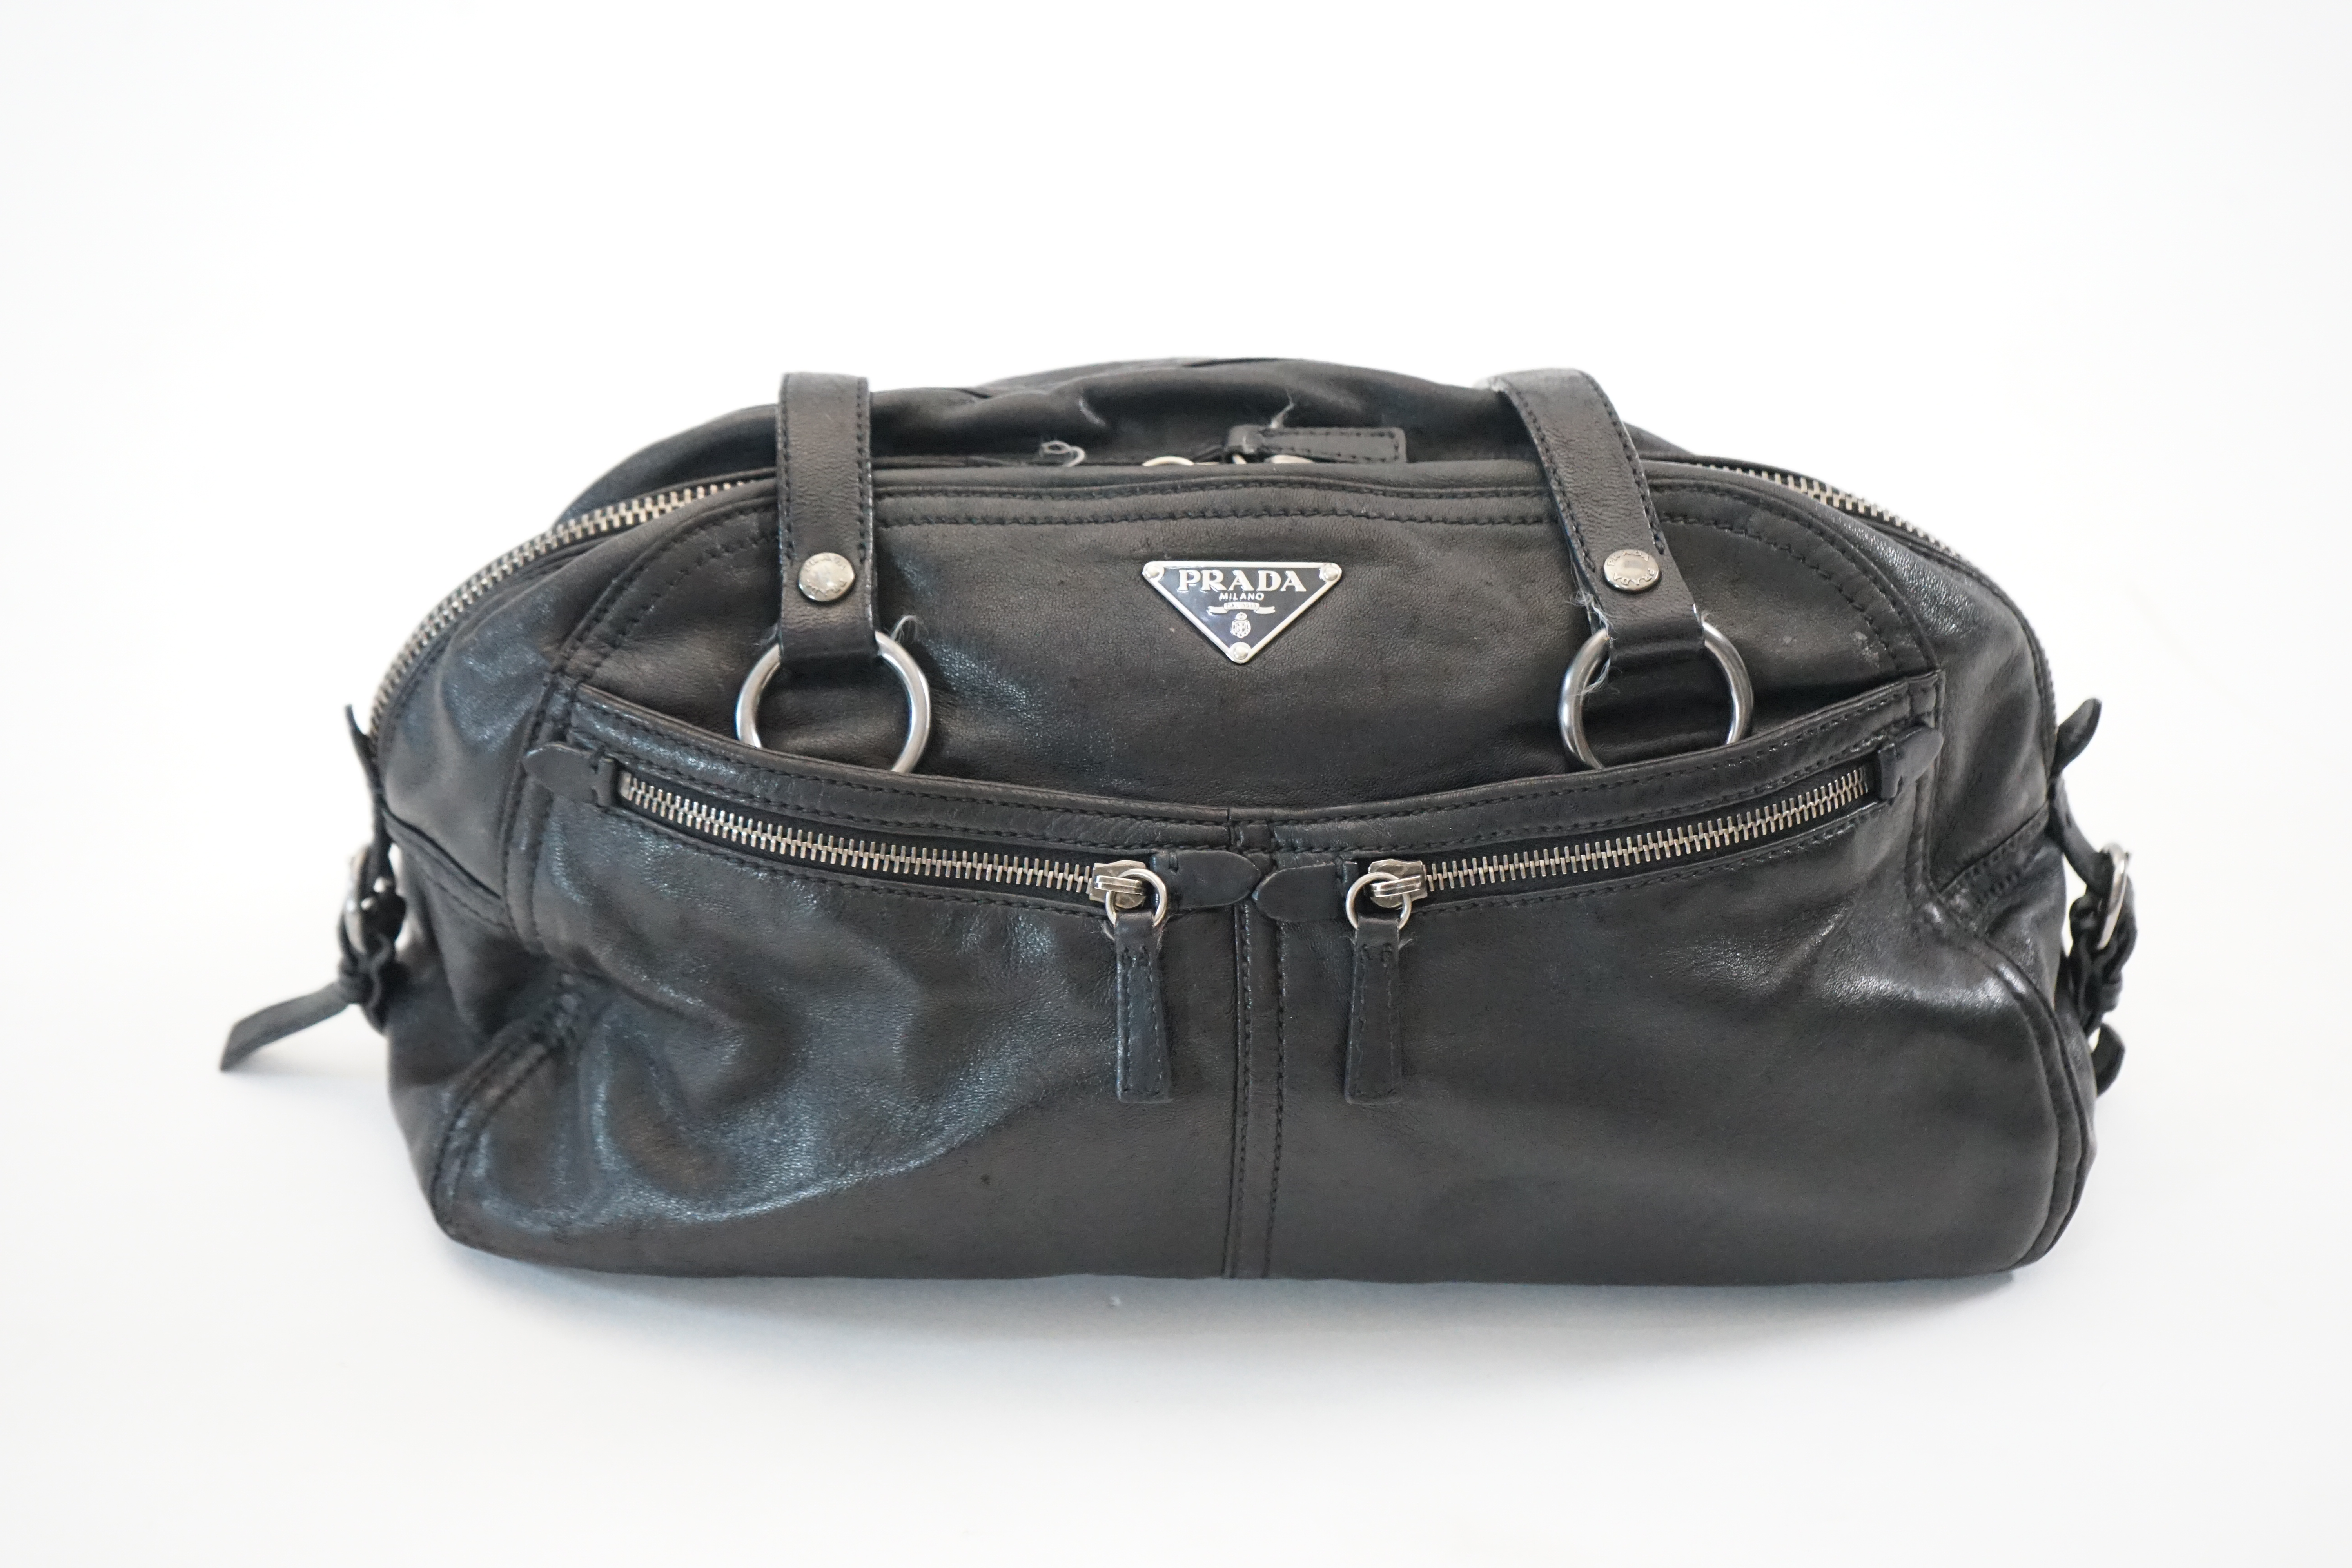 A Prada Cargo black leather handbag, width 38cm, depth 12cm, height approx 22cm